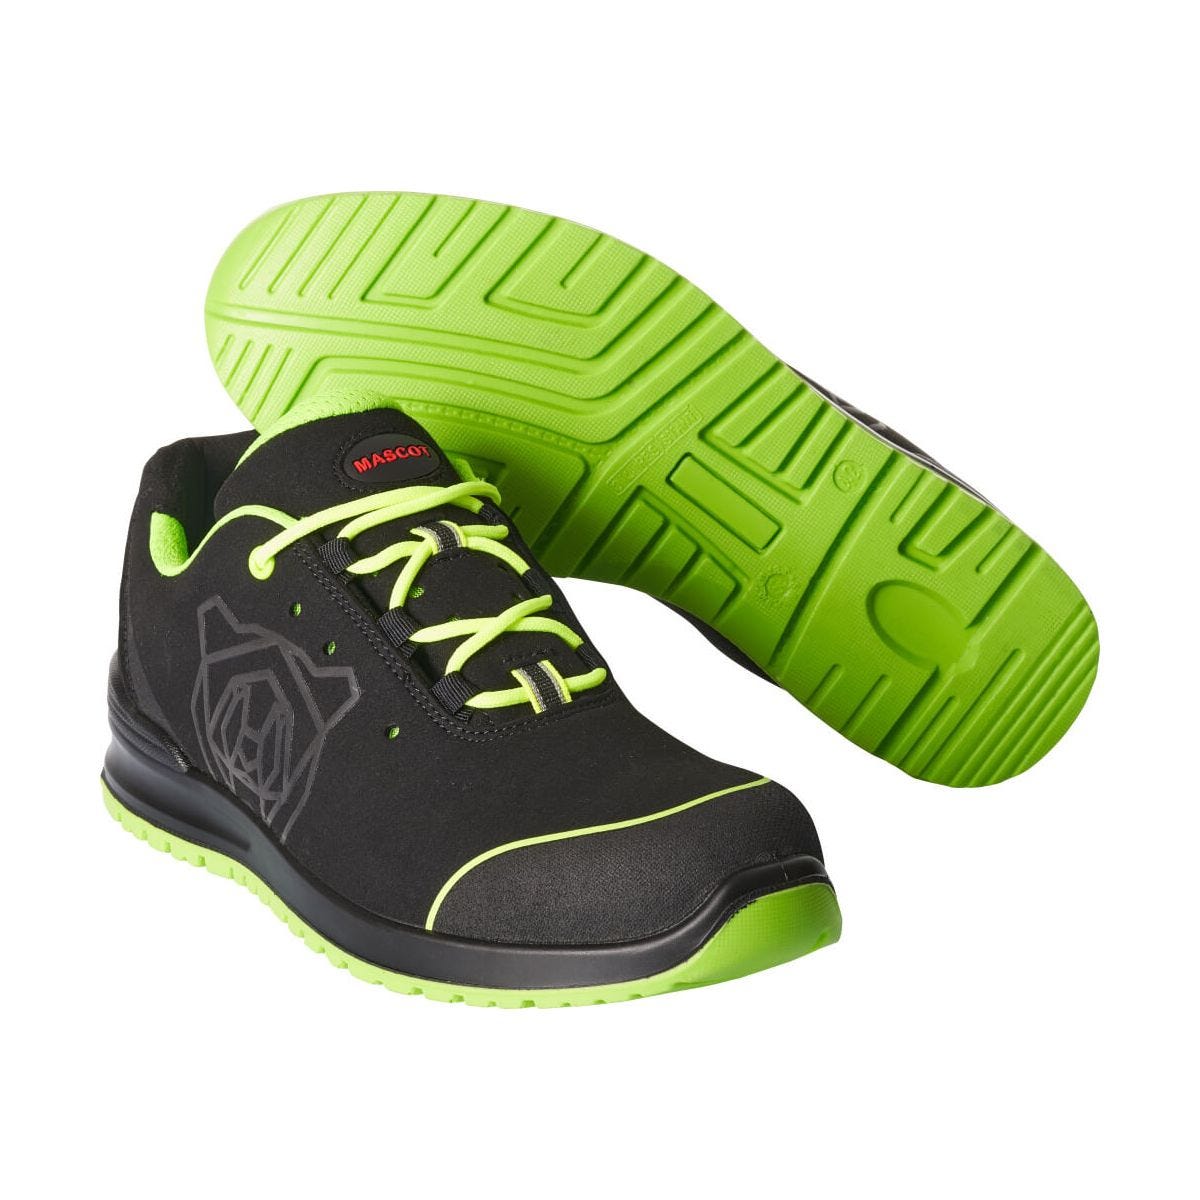 Chaussures de sécurité basses S1P Noir/Vert - Mascot - Taille 42 0